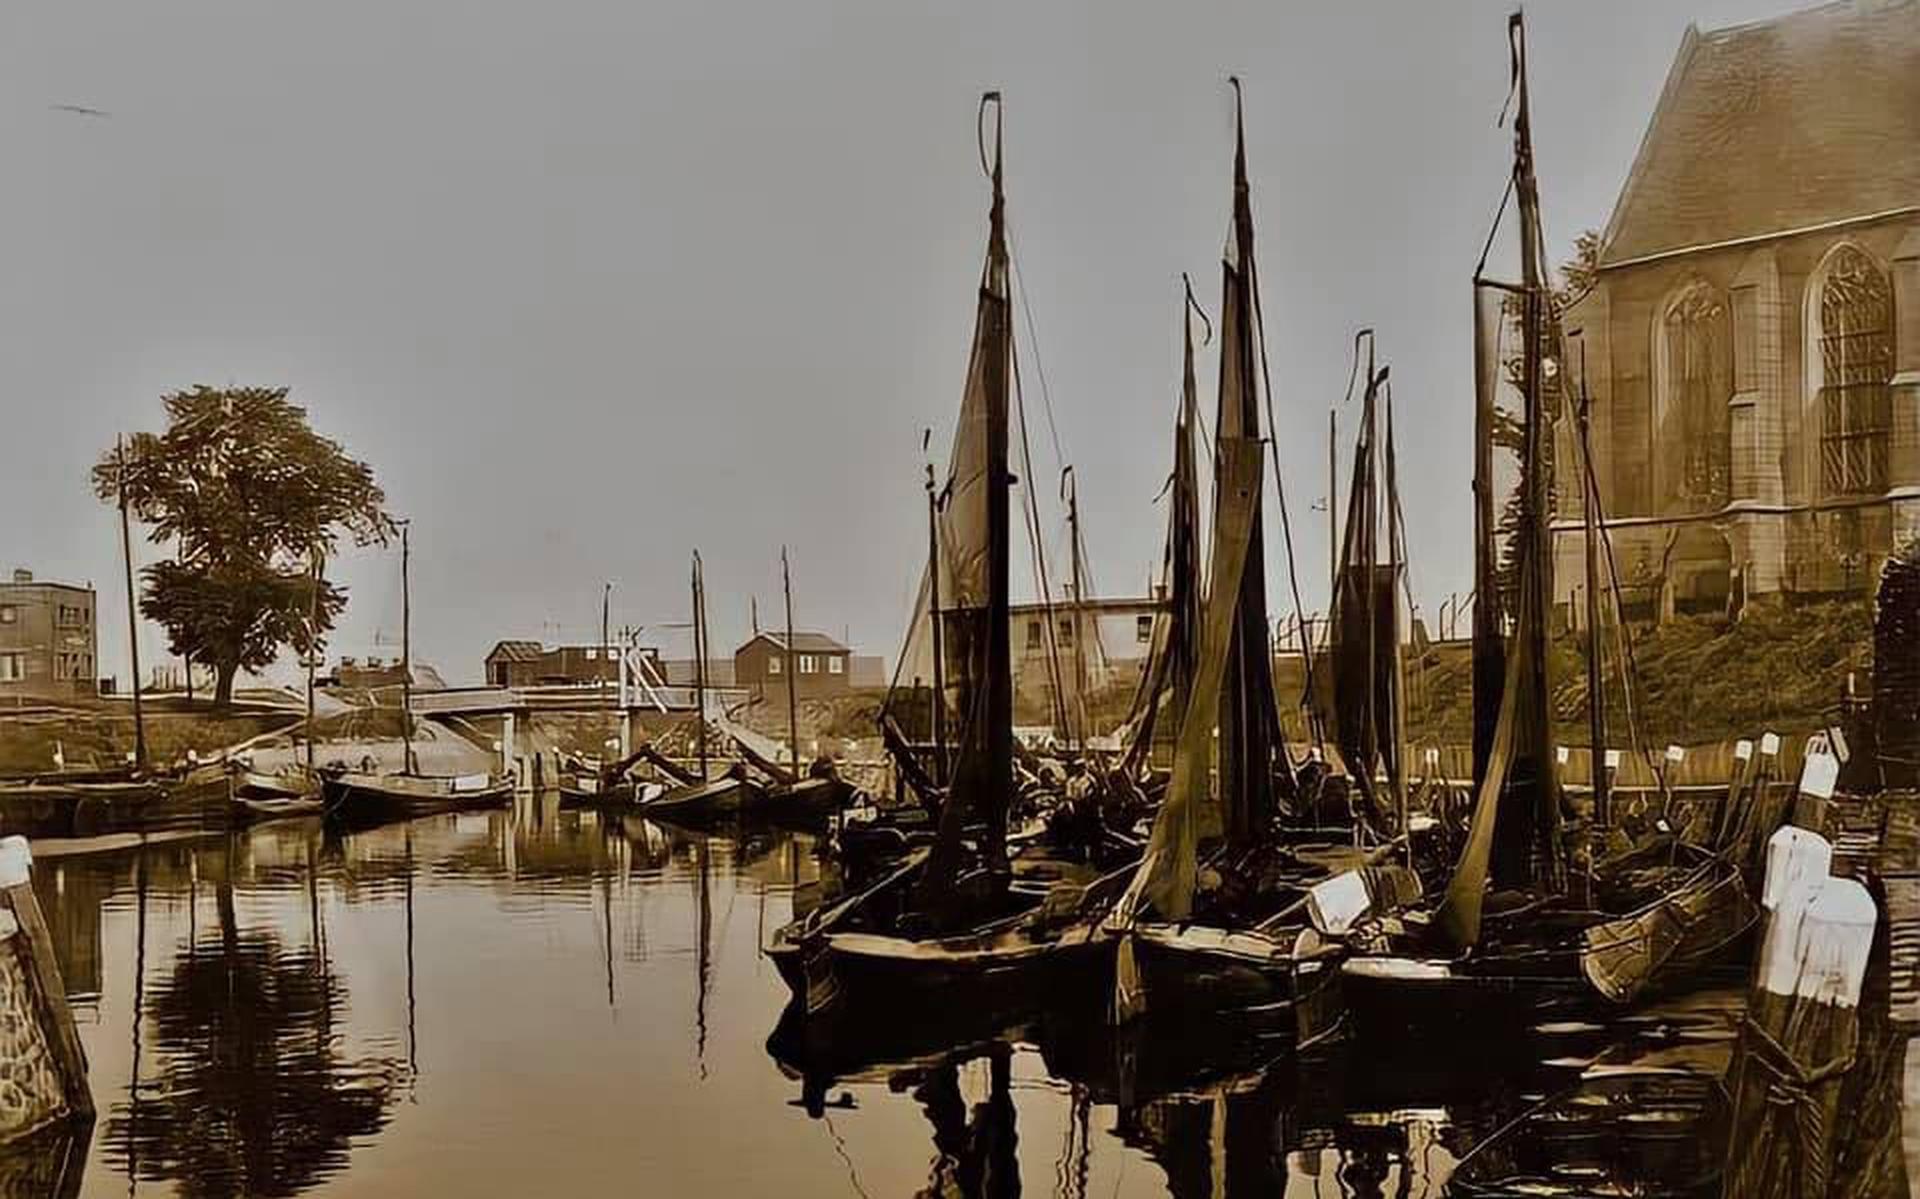 Op zaterdag 19 maart houden de Noorderschippers van de Vereniging Het Historisch Bedrijfsvaartuig hun jaarlijkse Tjalkendag in Vollenhove.